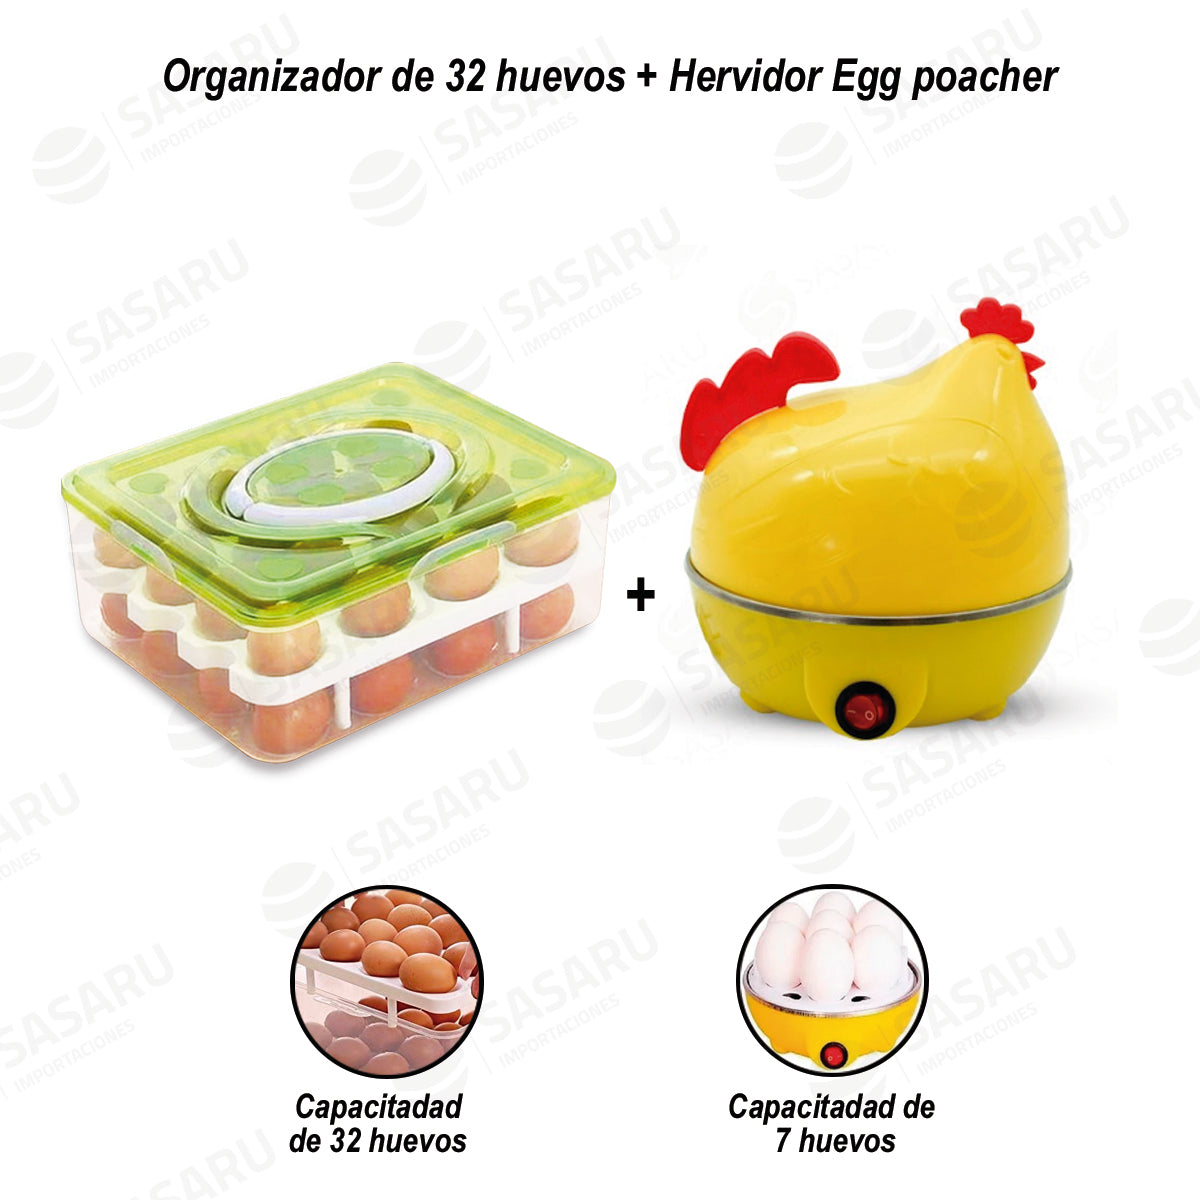 Egg Poacher + Bandeja Organizadora de 32 Huevos